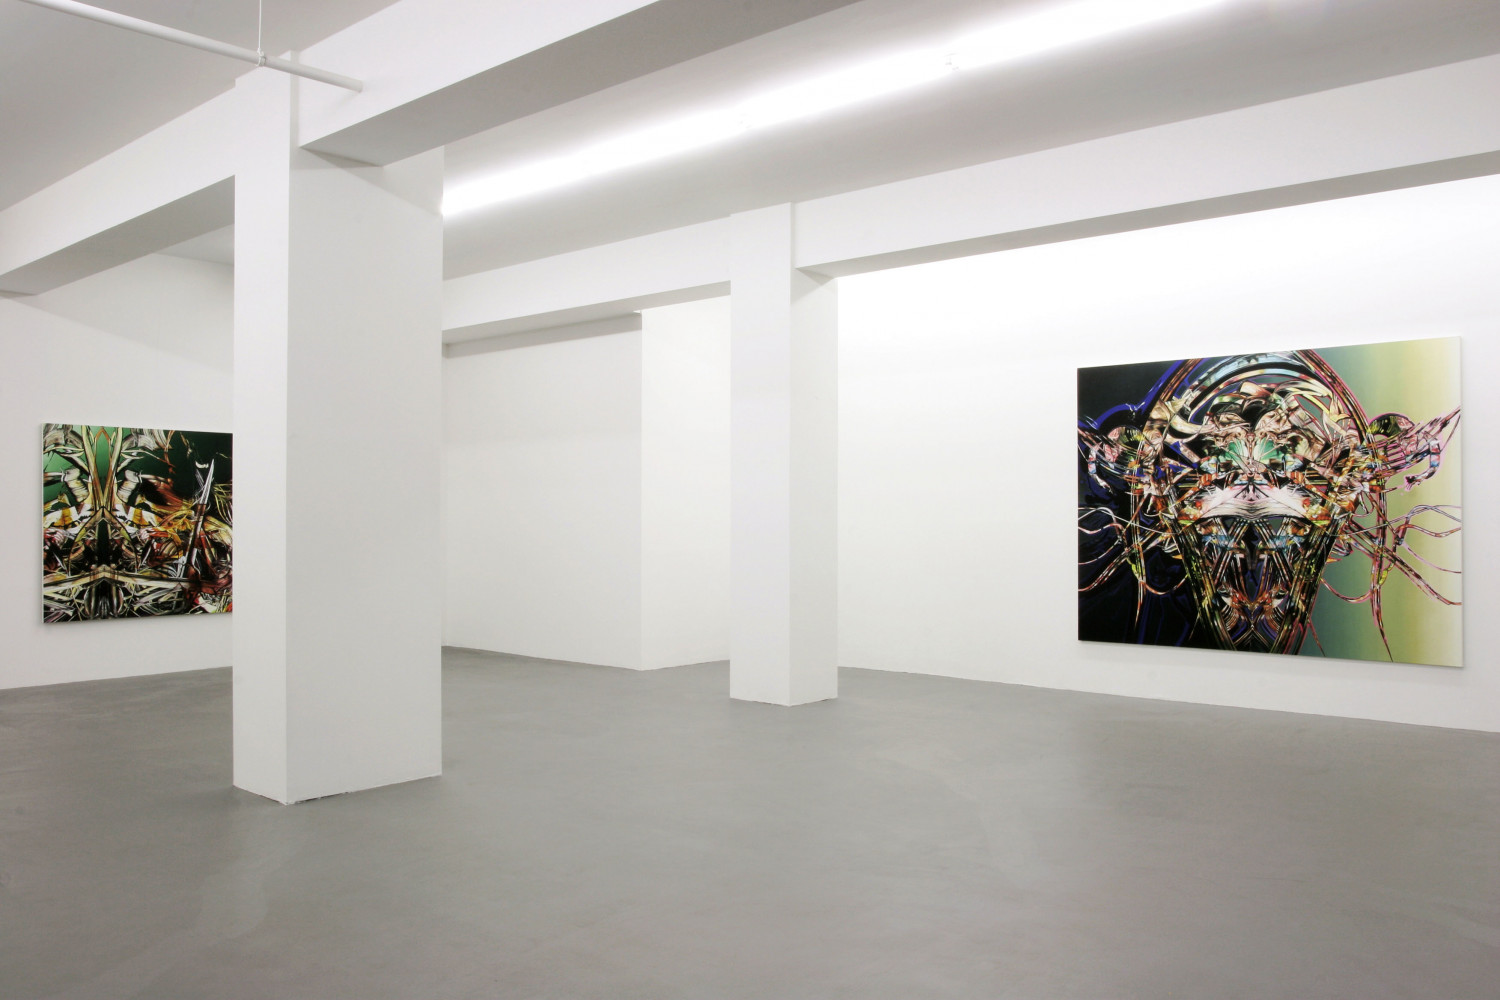 Sean Dawson, ‘Silent Glitch ’, Installationsansicht, Buchmann Galerie, 2005